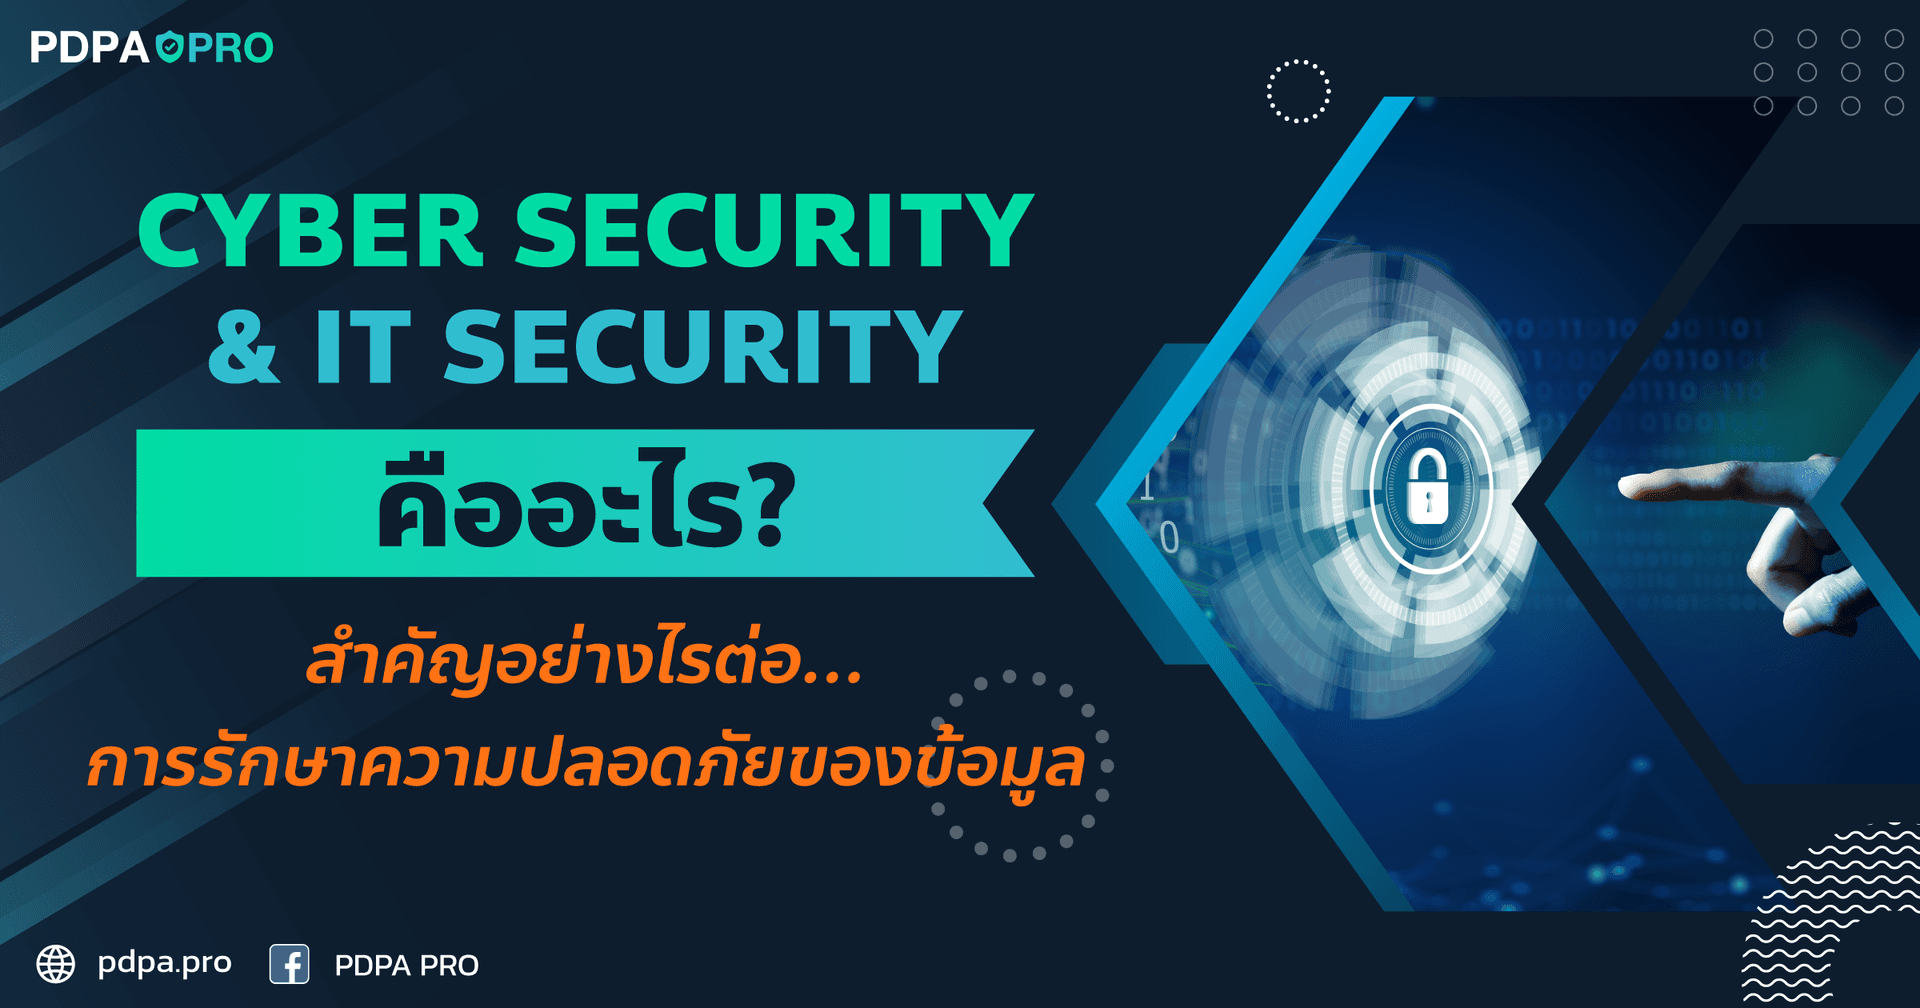 Cyber Security และ IT Security คือ อะไร ? สำคัญอย่างไรต่อการรักษาความปลอดภัยของข้อมูล